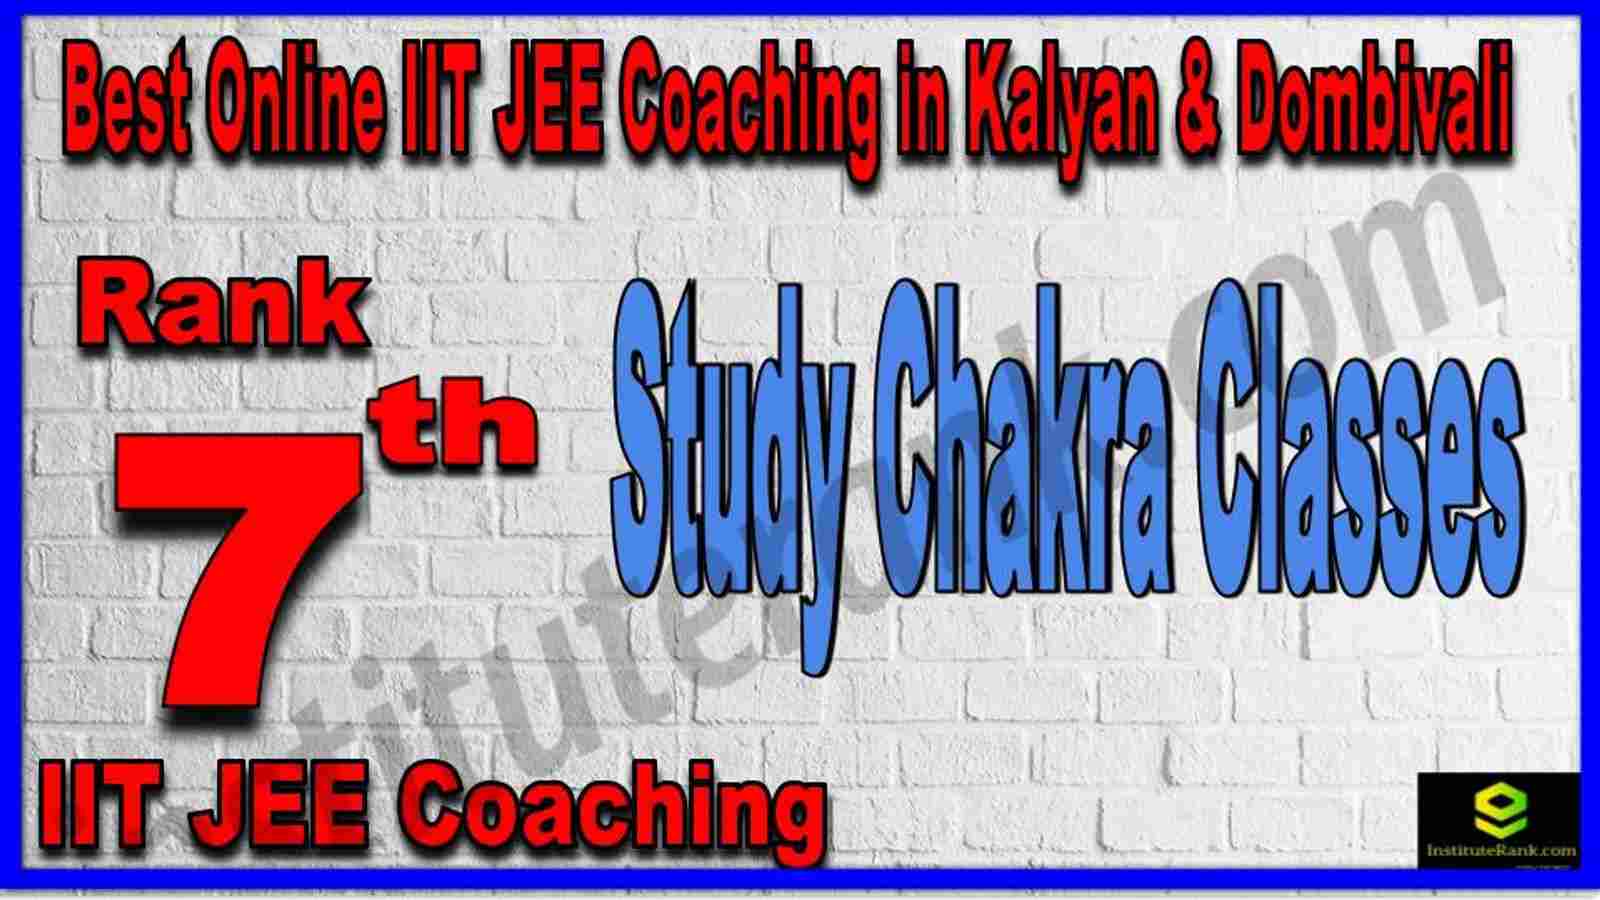 Rank 7th Best Online IIT JEE Coaching in Kalyan & Dombivali 